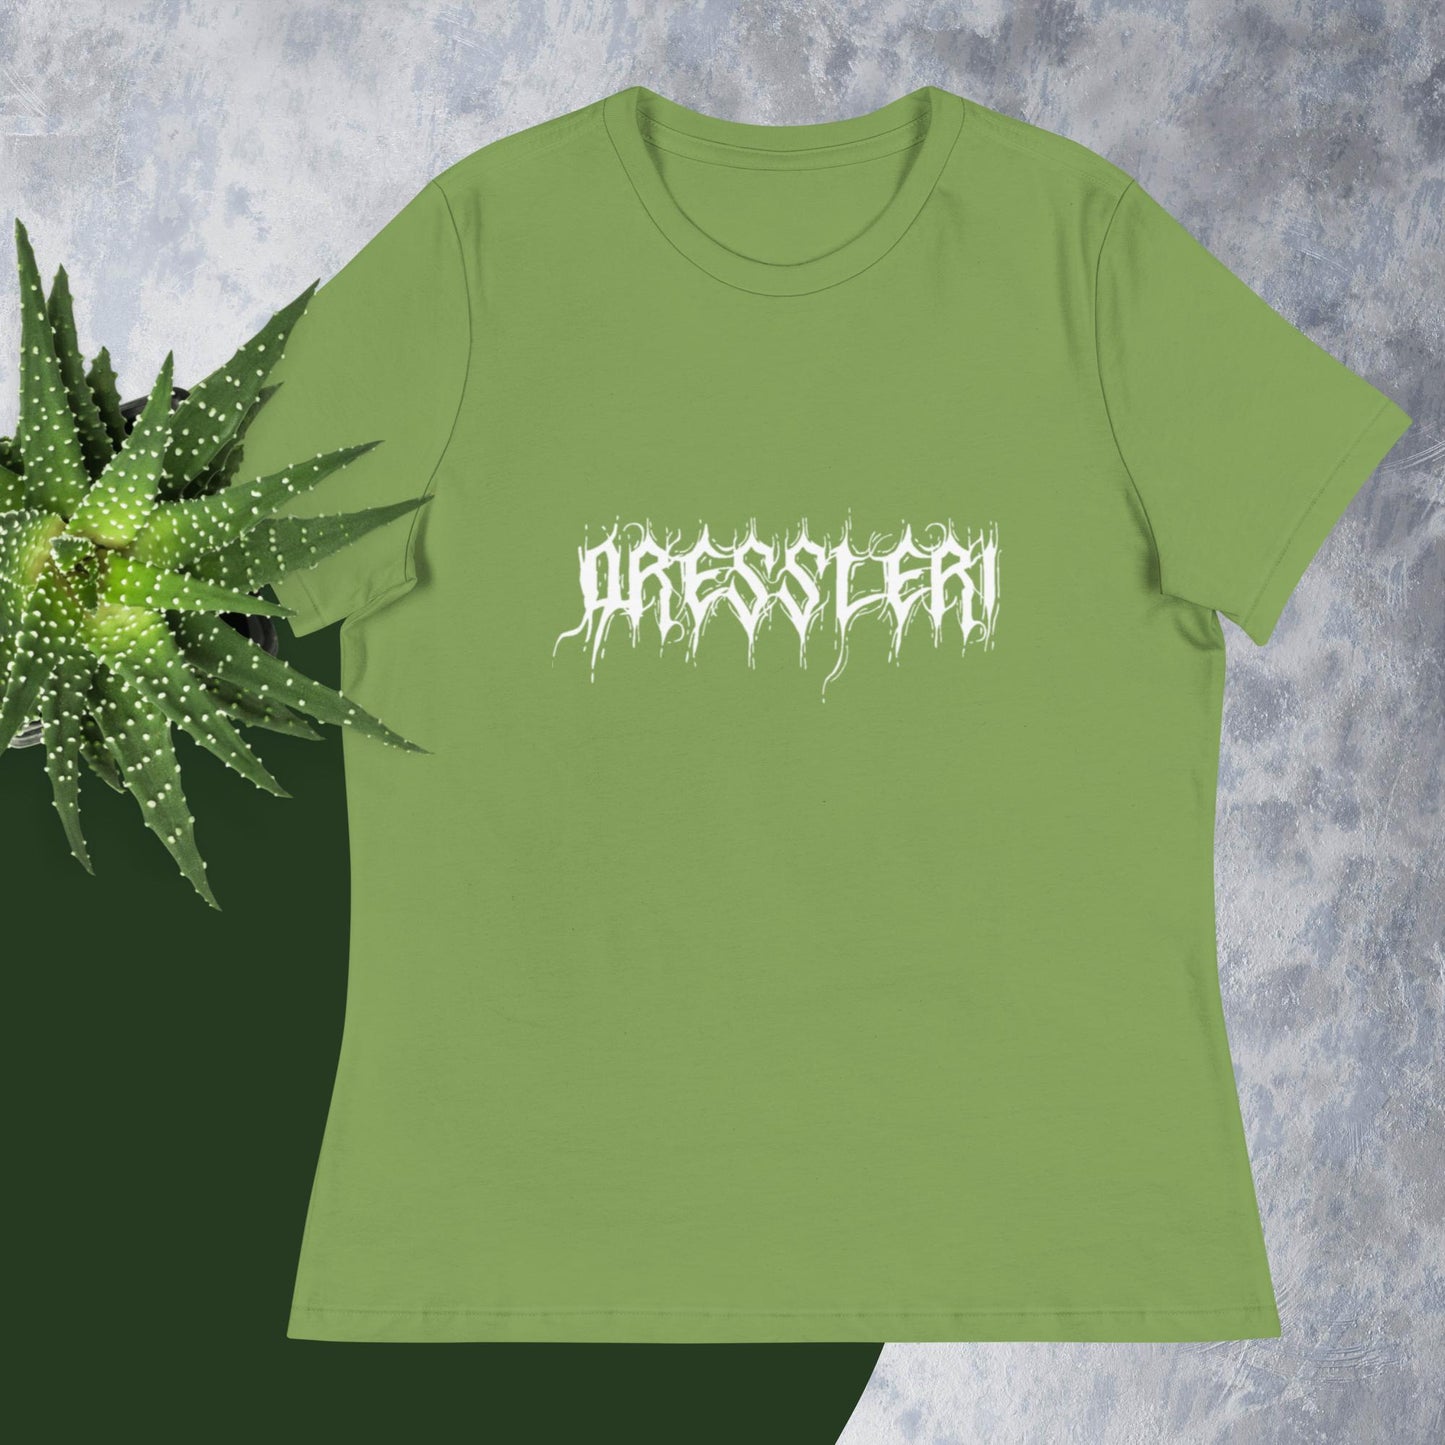 Women's Relaxed T-Shirt - Dressleri Death Metal logo